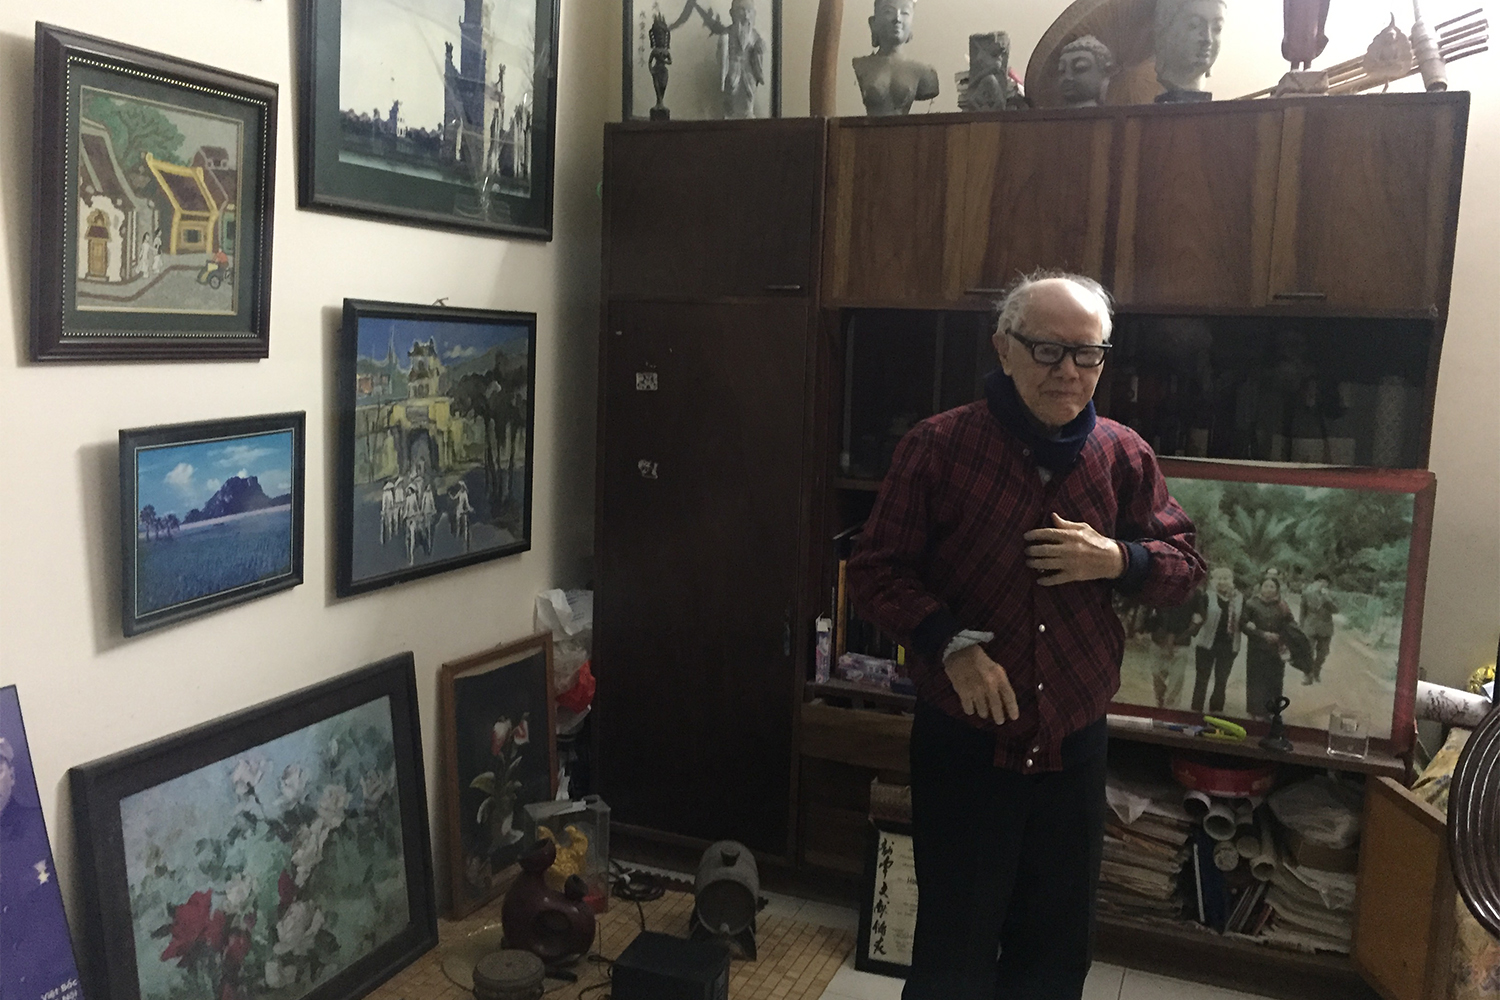 Hữu Ngọc nous a reçu chez lui. A 99 ans, il garde le sourire, la pêche et l’envie de transmettre sa passion pour la culture vietnamienne.